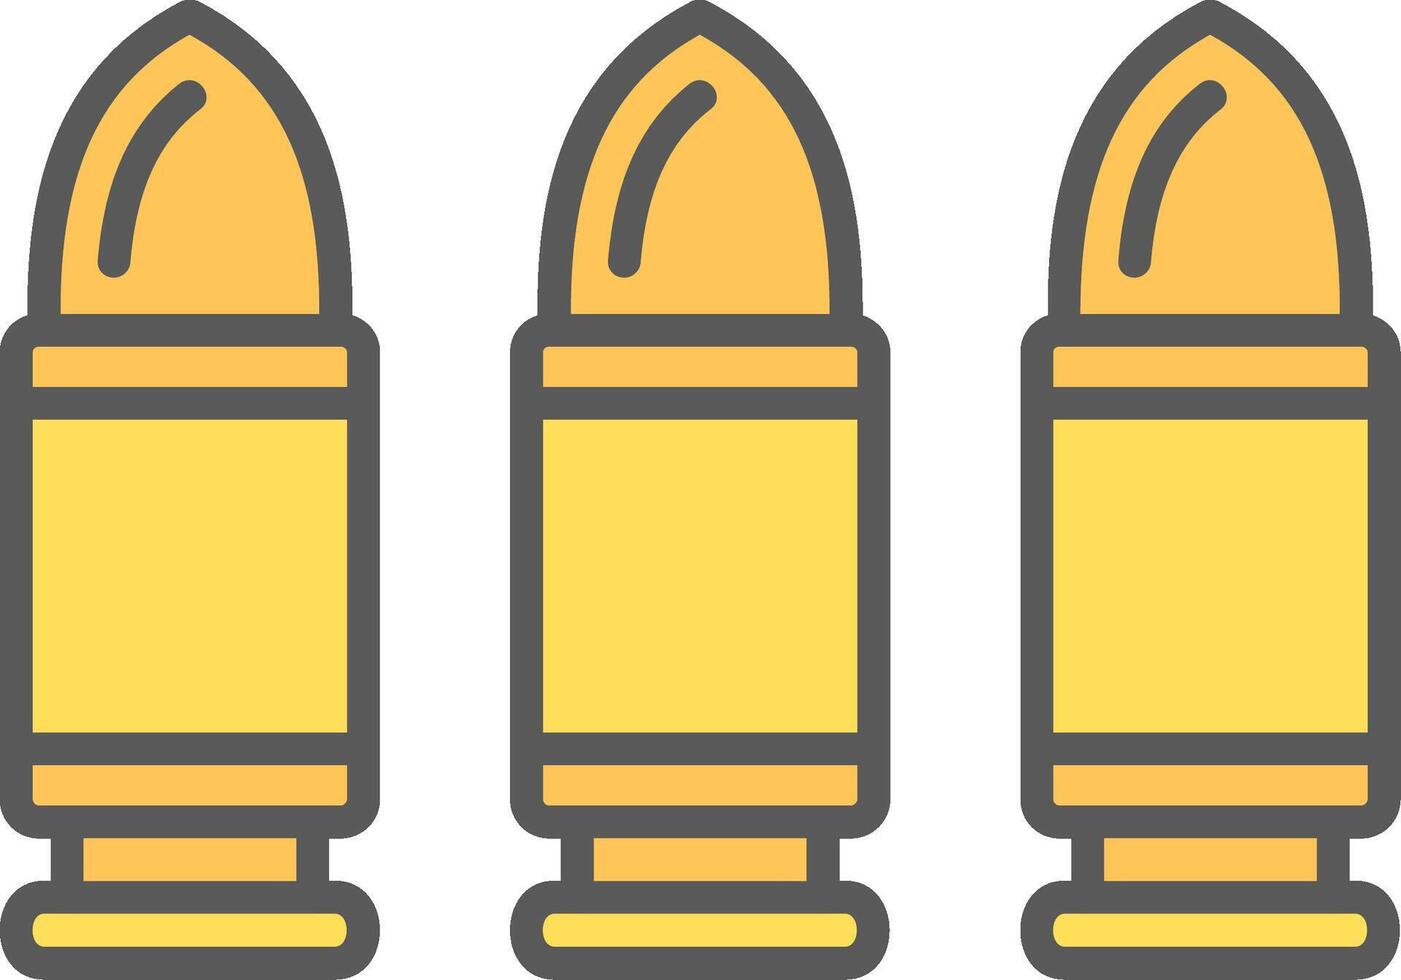 ícone de vetor de balas